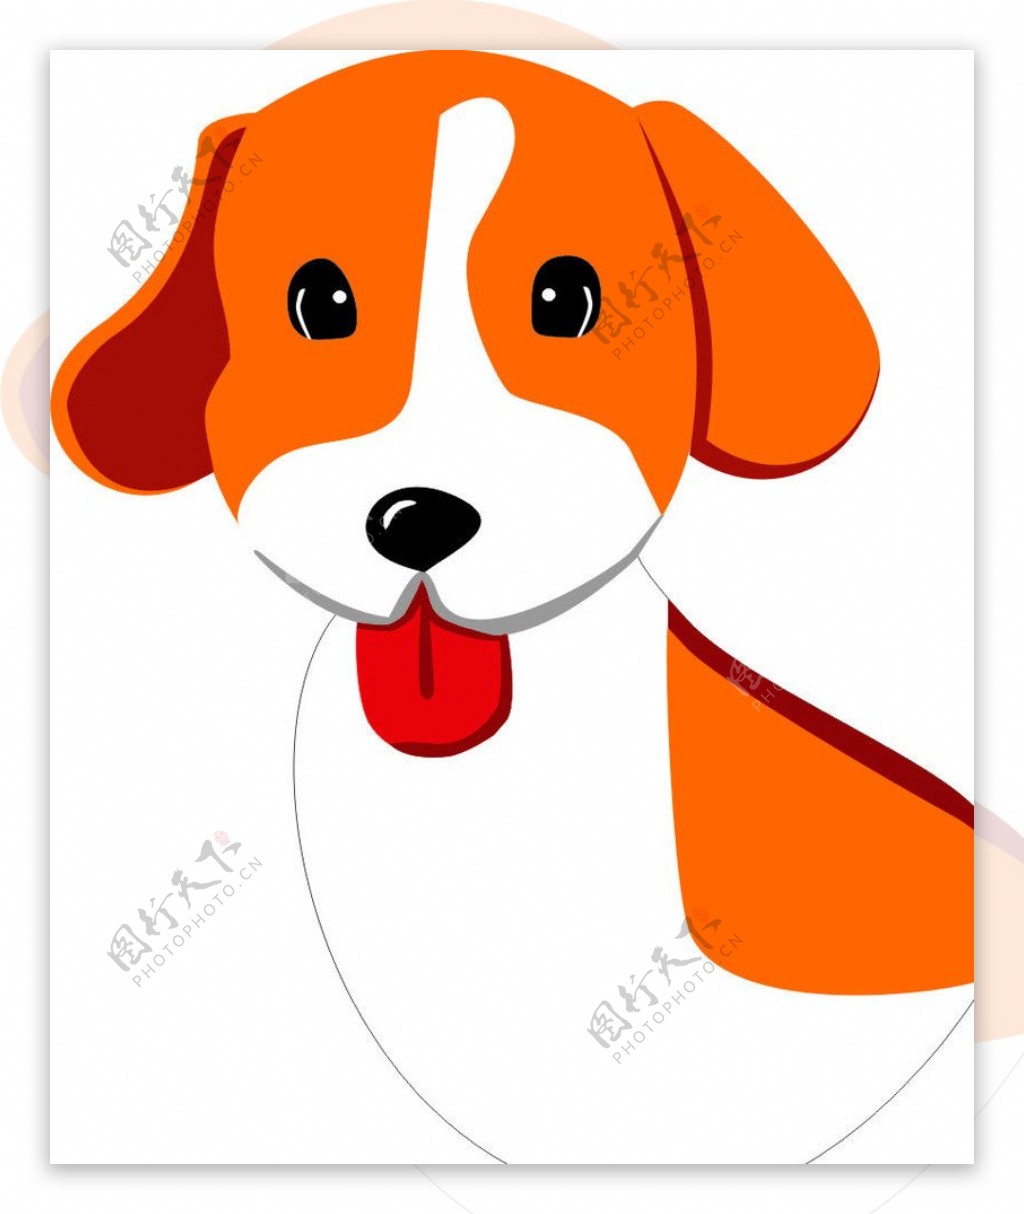 小狗卡通畫圖案素材 | PNG和向量圖 | 透明背景圖片 | 免費下载 - Pngtree